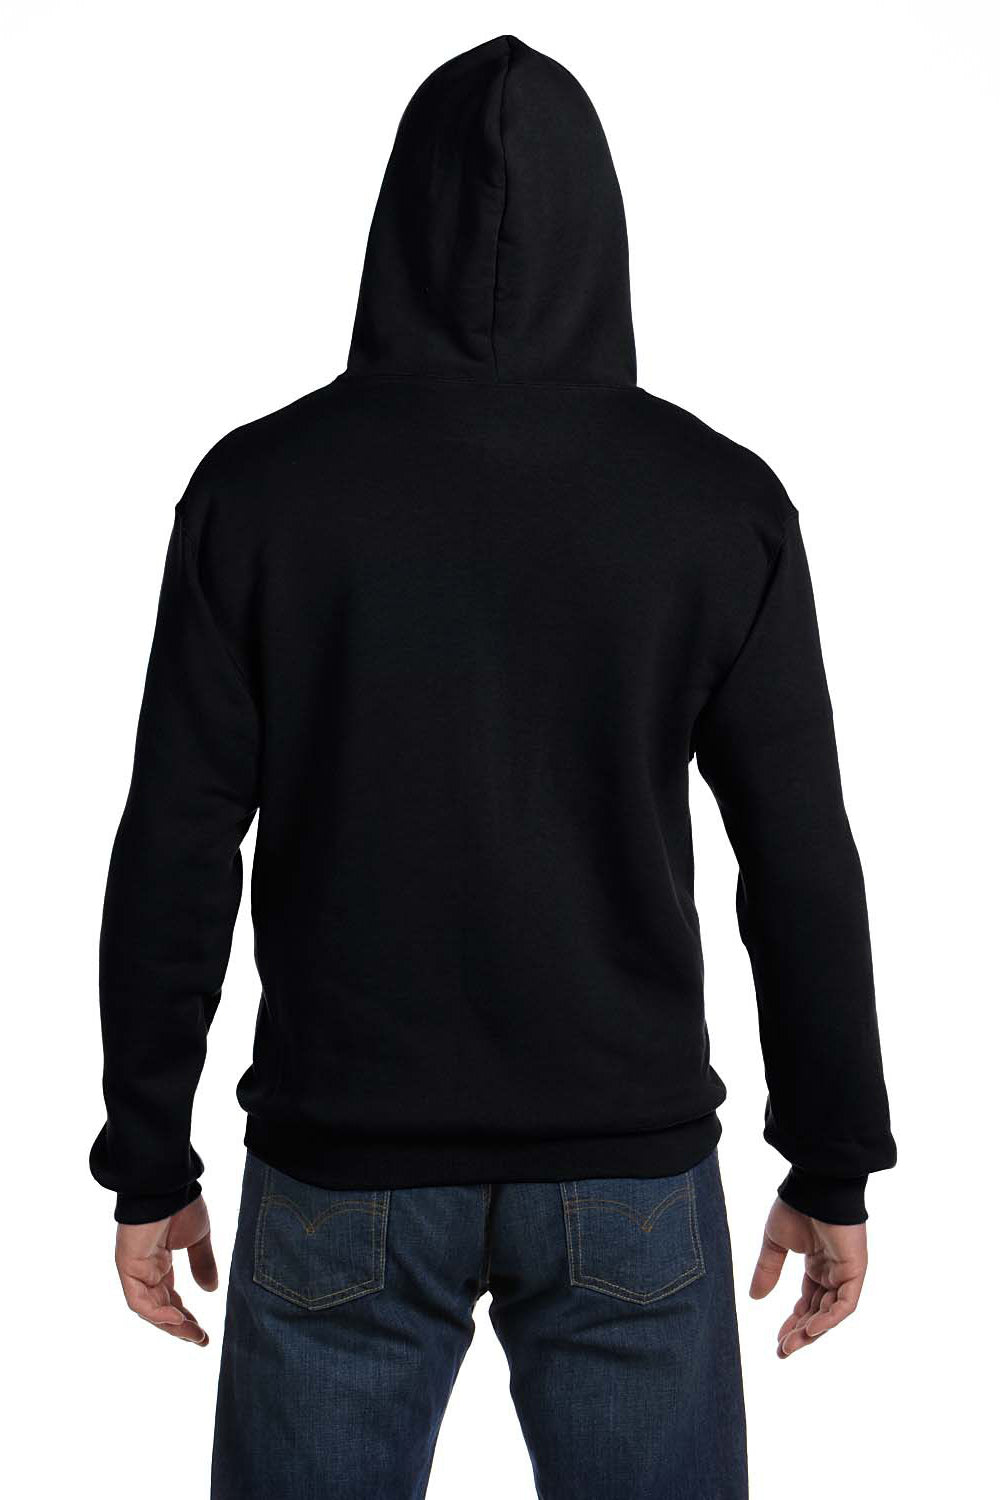 Fruit Of The Loom 82230 Mens Supercotton Fleece Full Zip Hooded Sweatshirt Hoodie Black Back